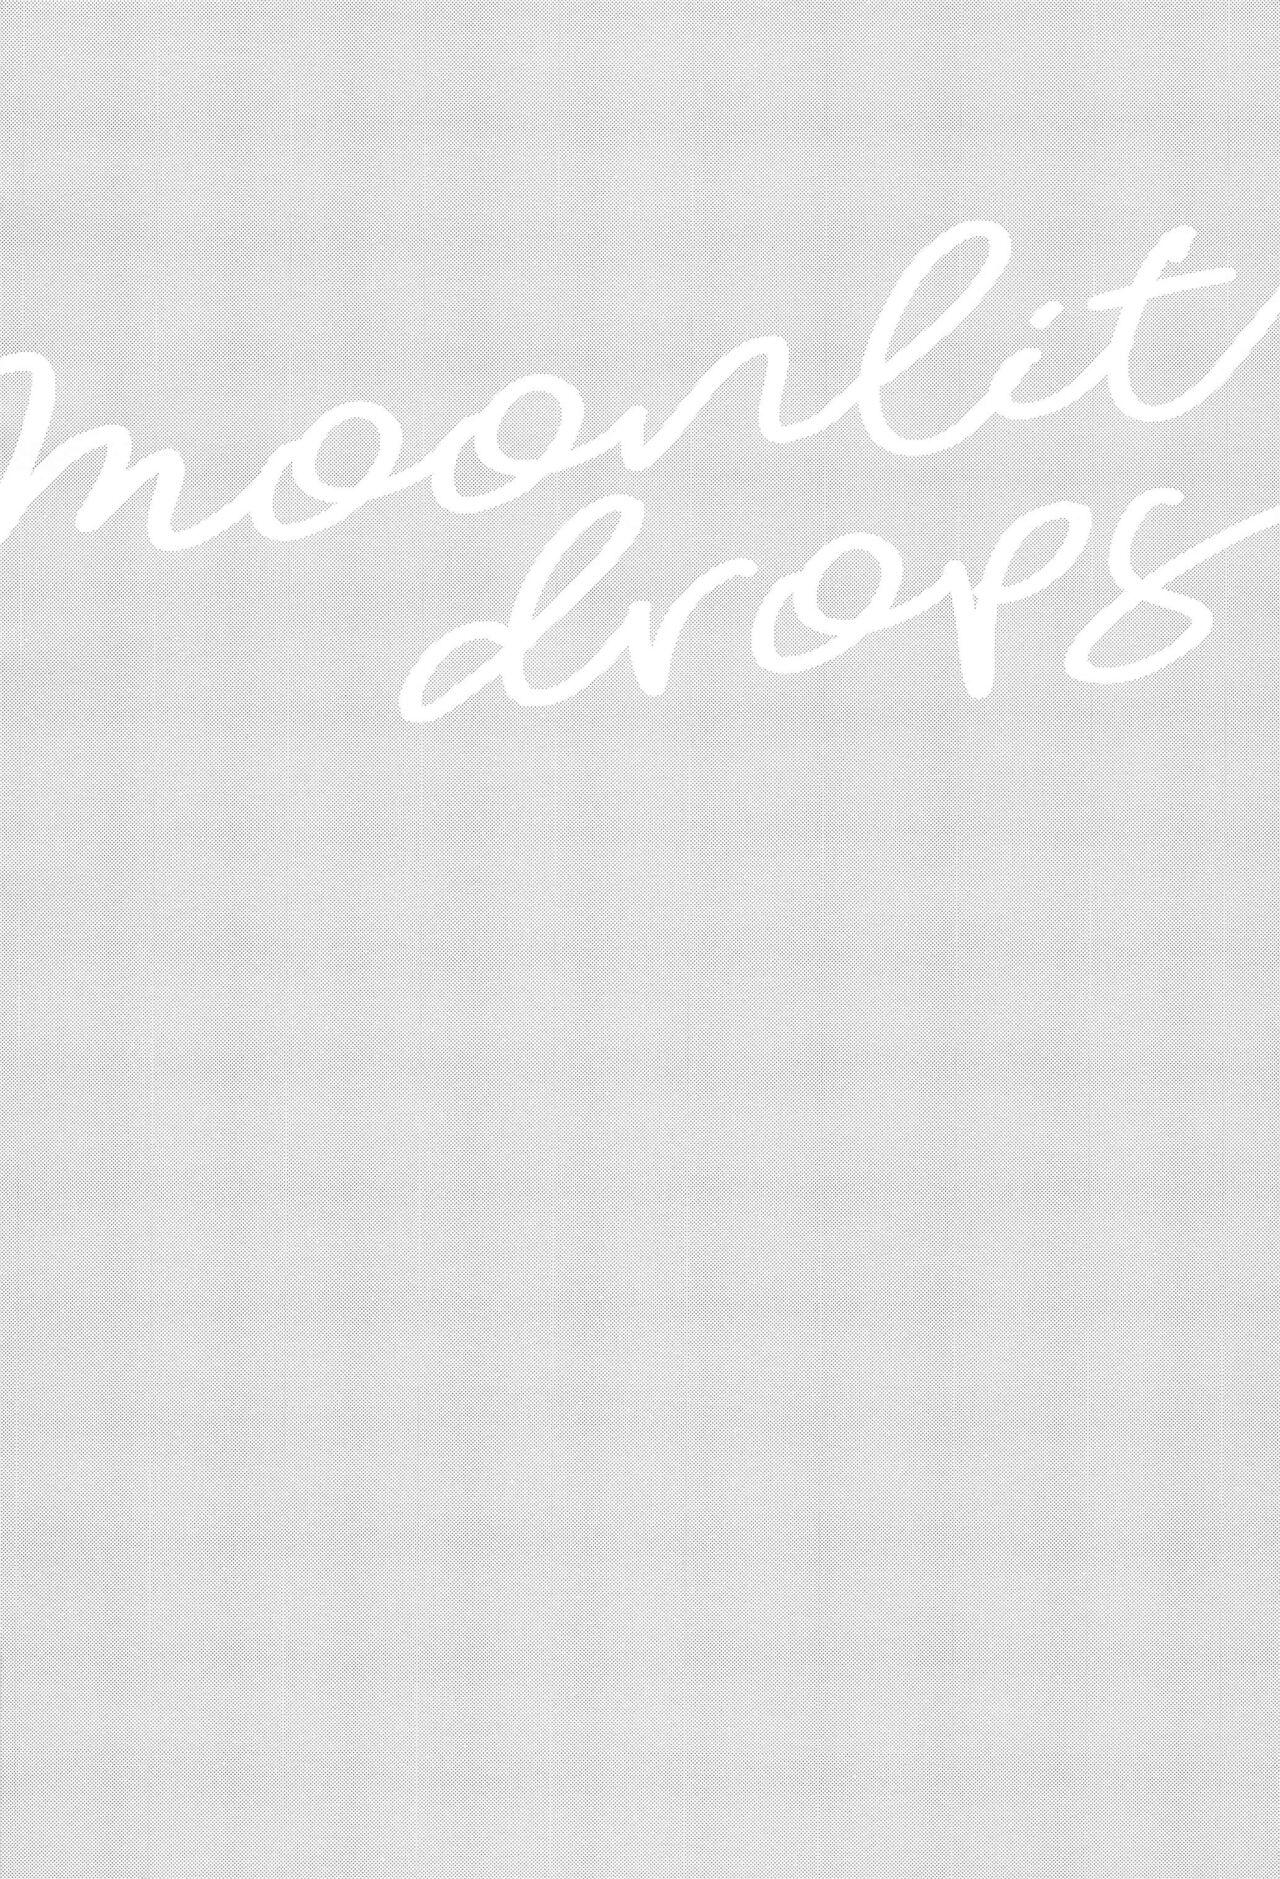 Moonlit drops 2